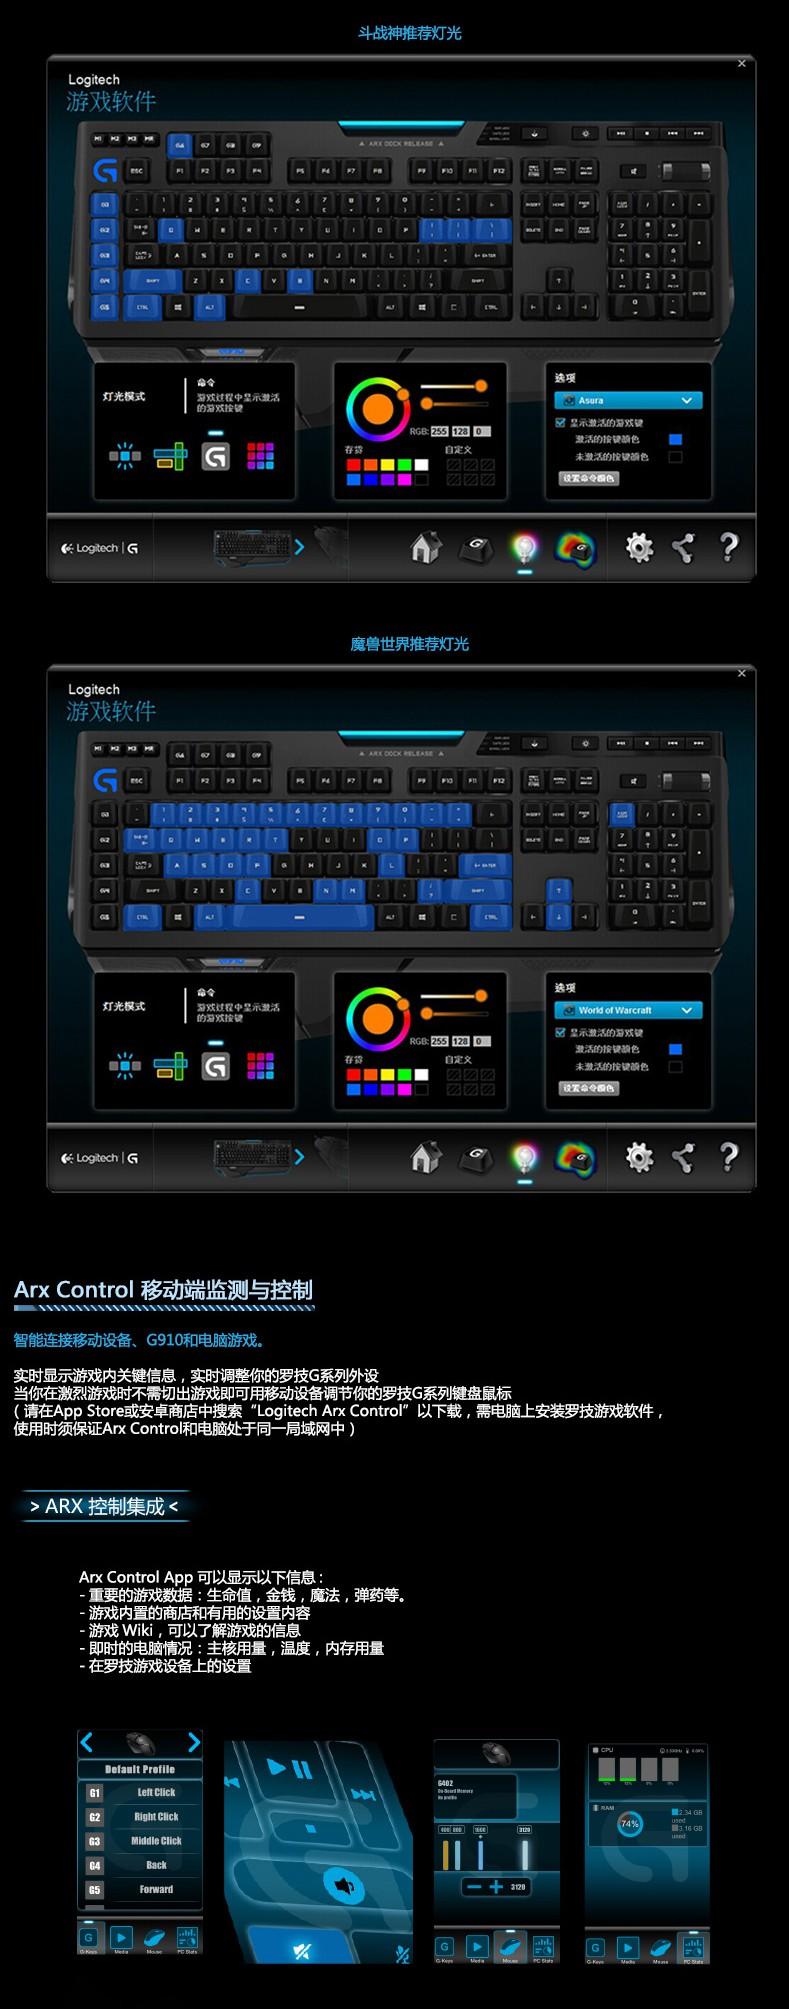 罗技G910 有线游戏机械键盘 LOL/CF 专业编程背光游戏键盘